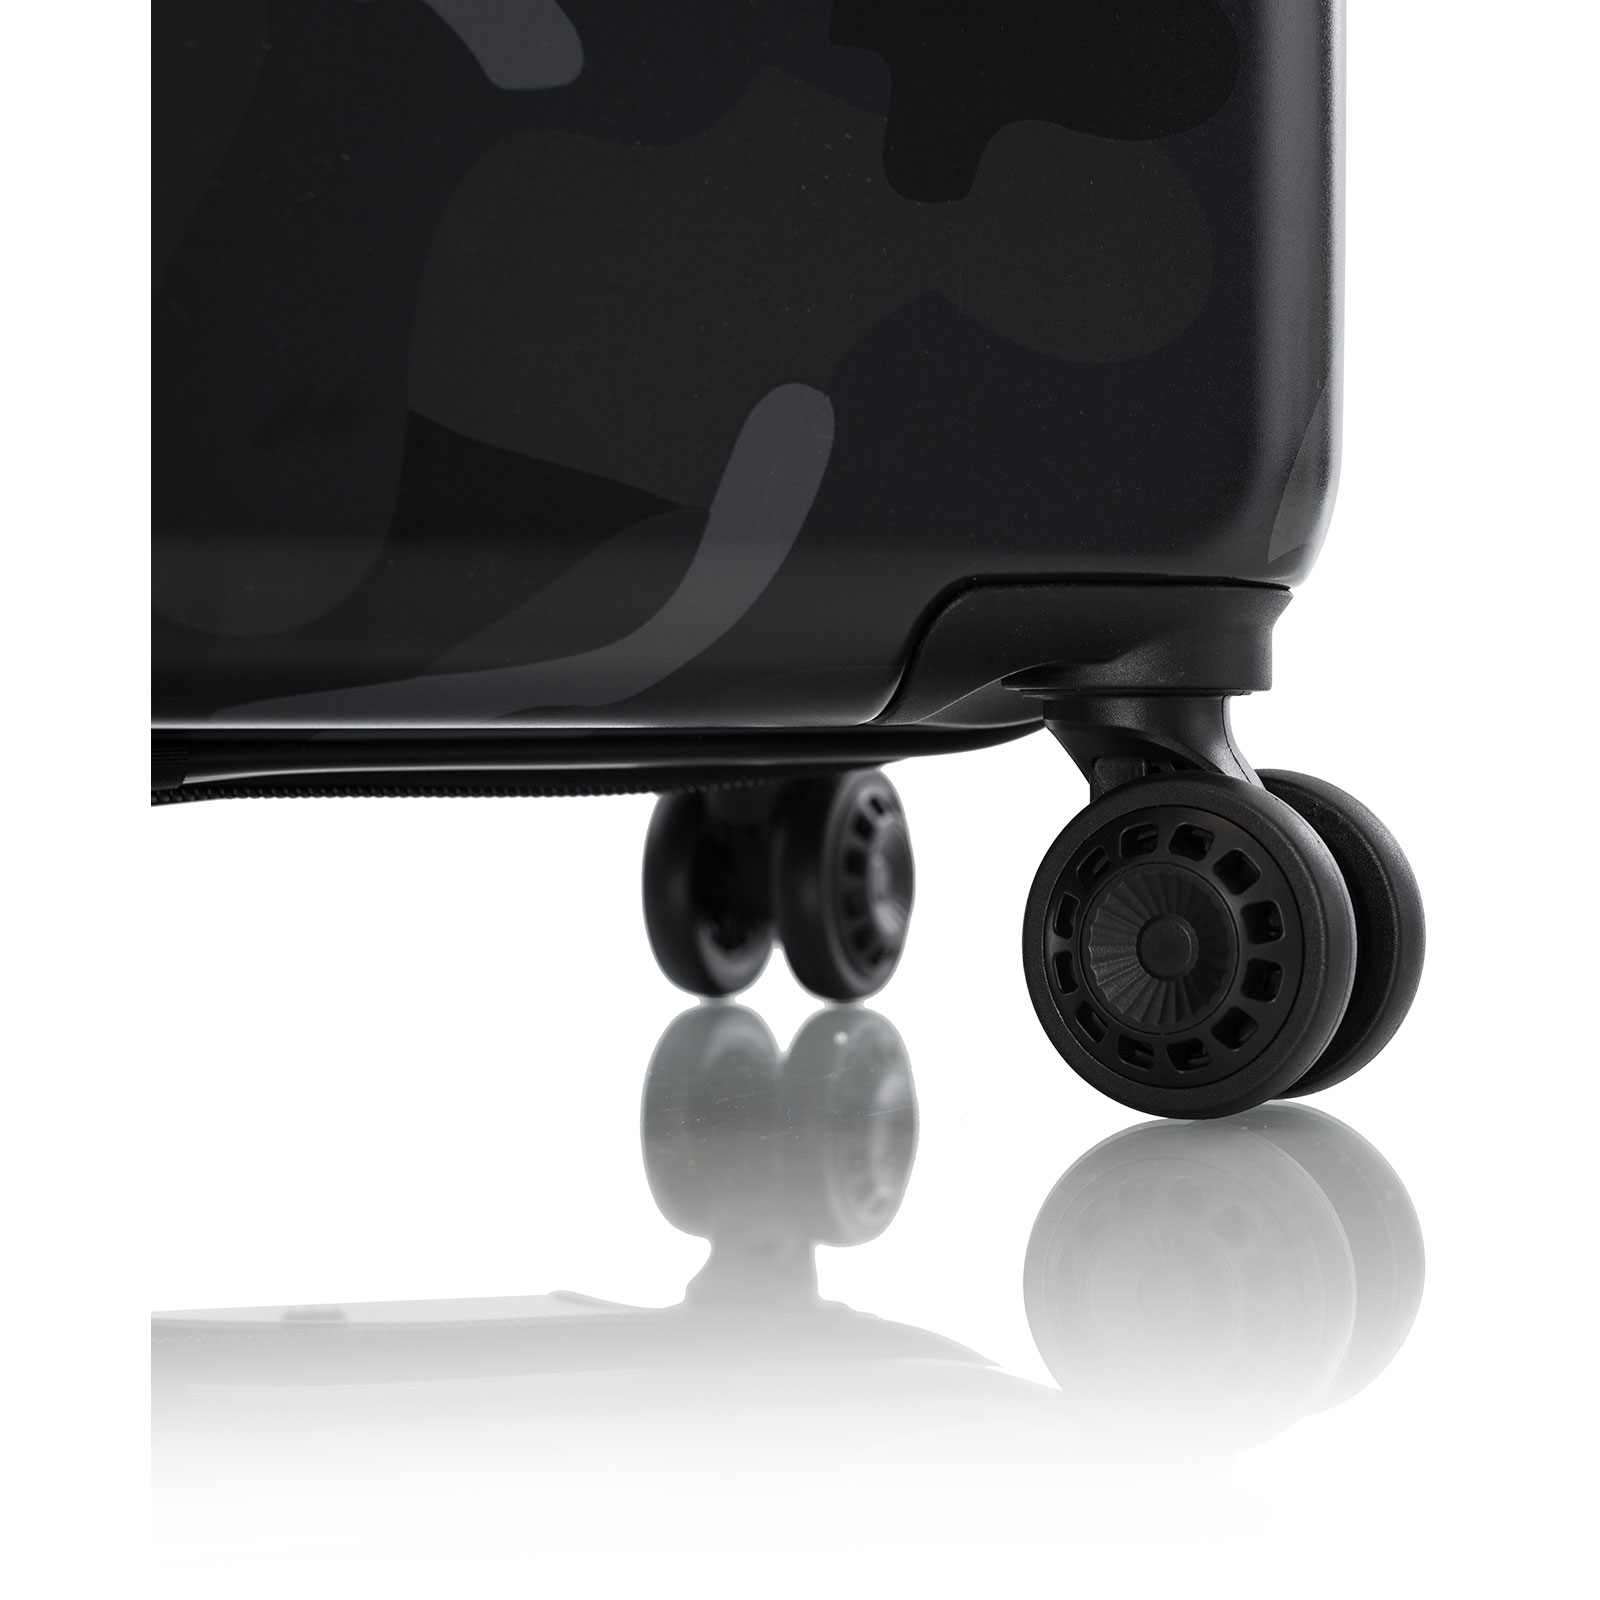 Heys Black Camo Trolley 76 cm 4 Rollen erweiterbar günstig kaufen |  Koffermarkt